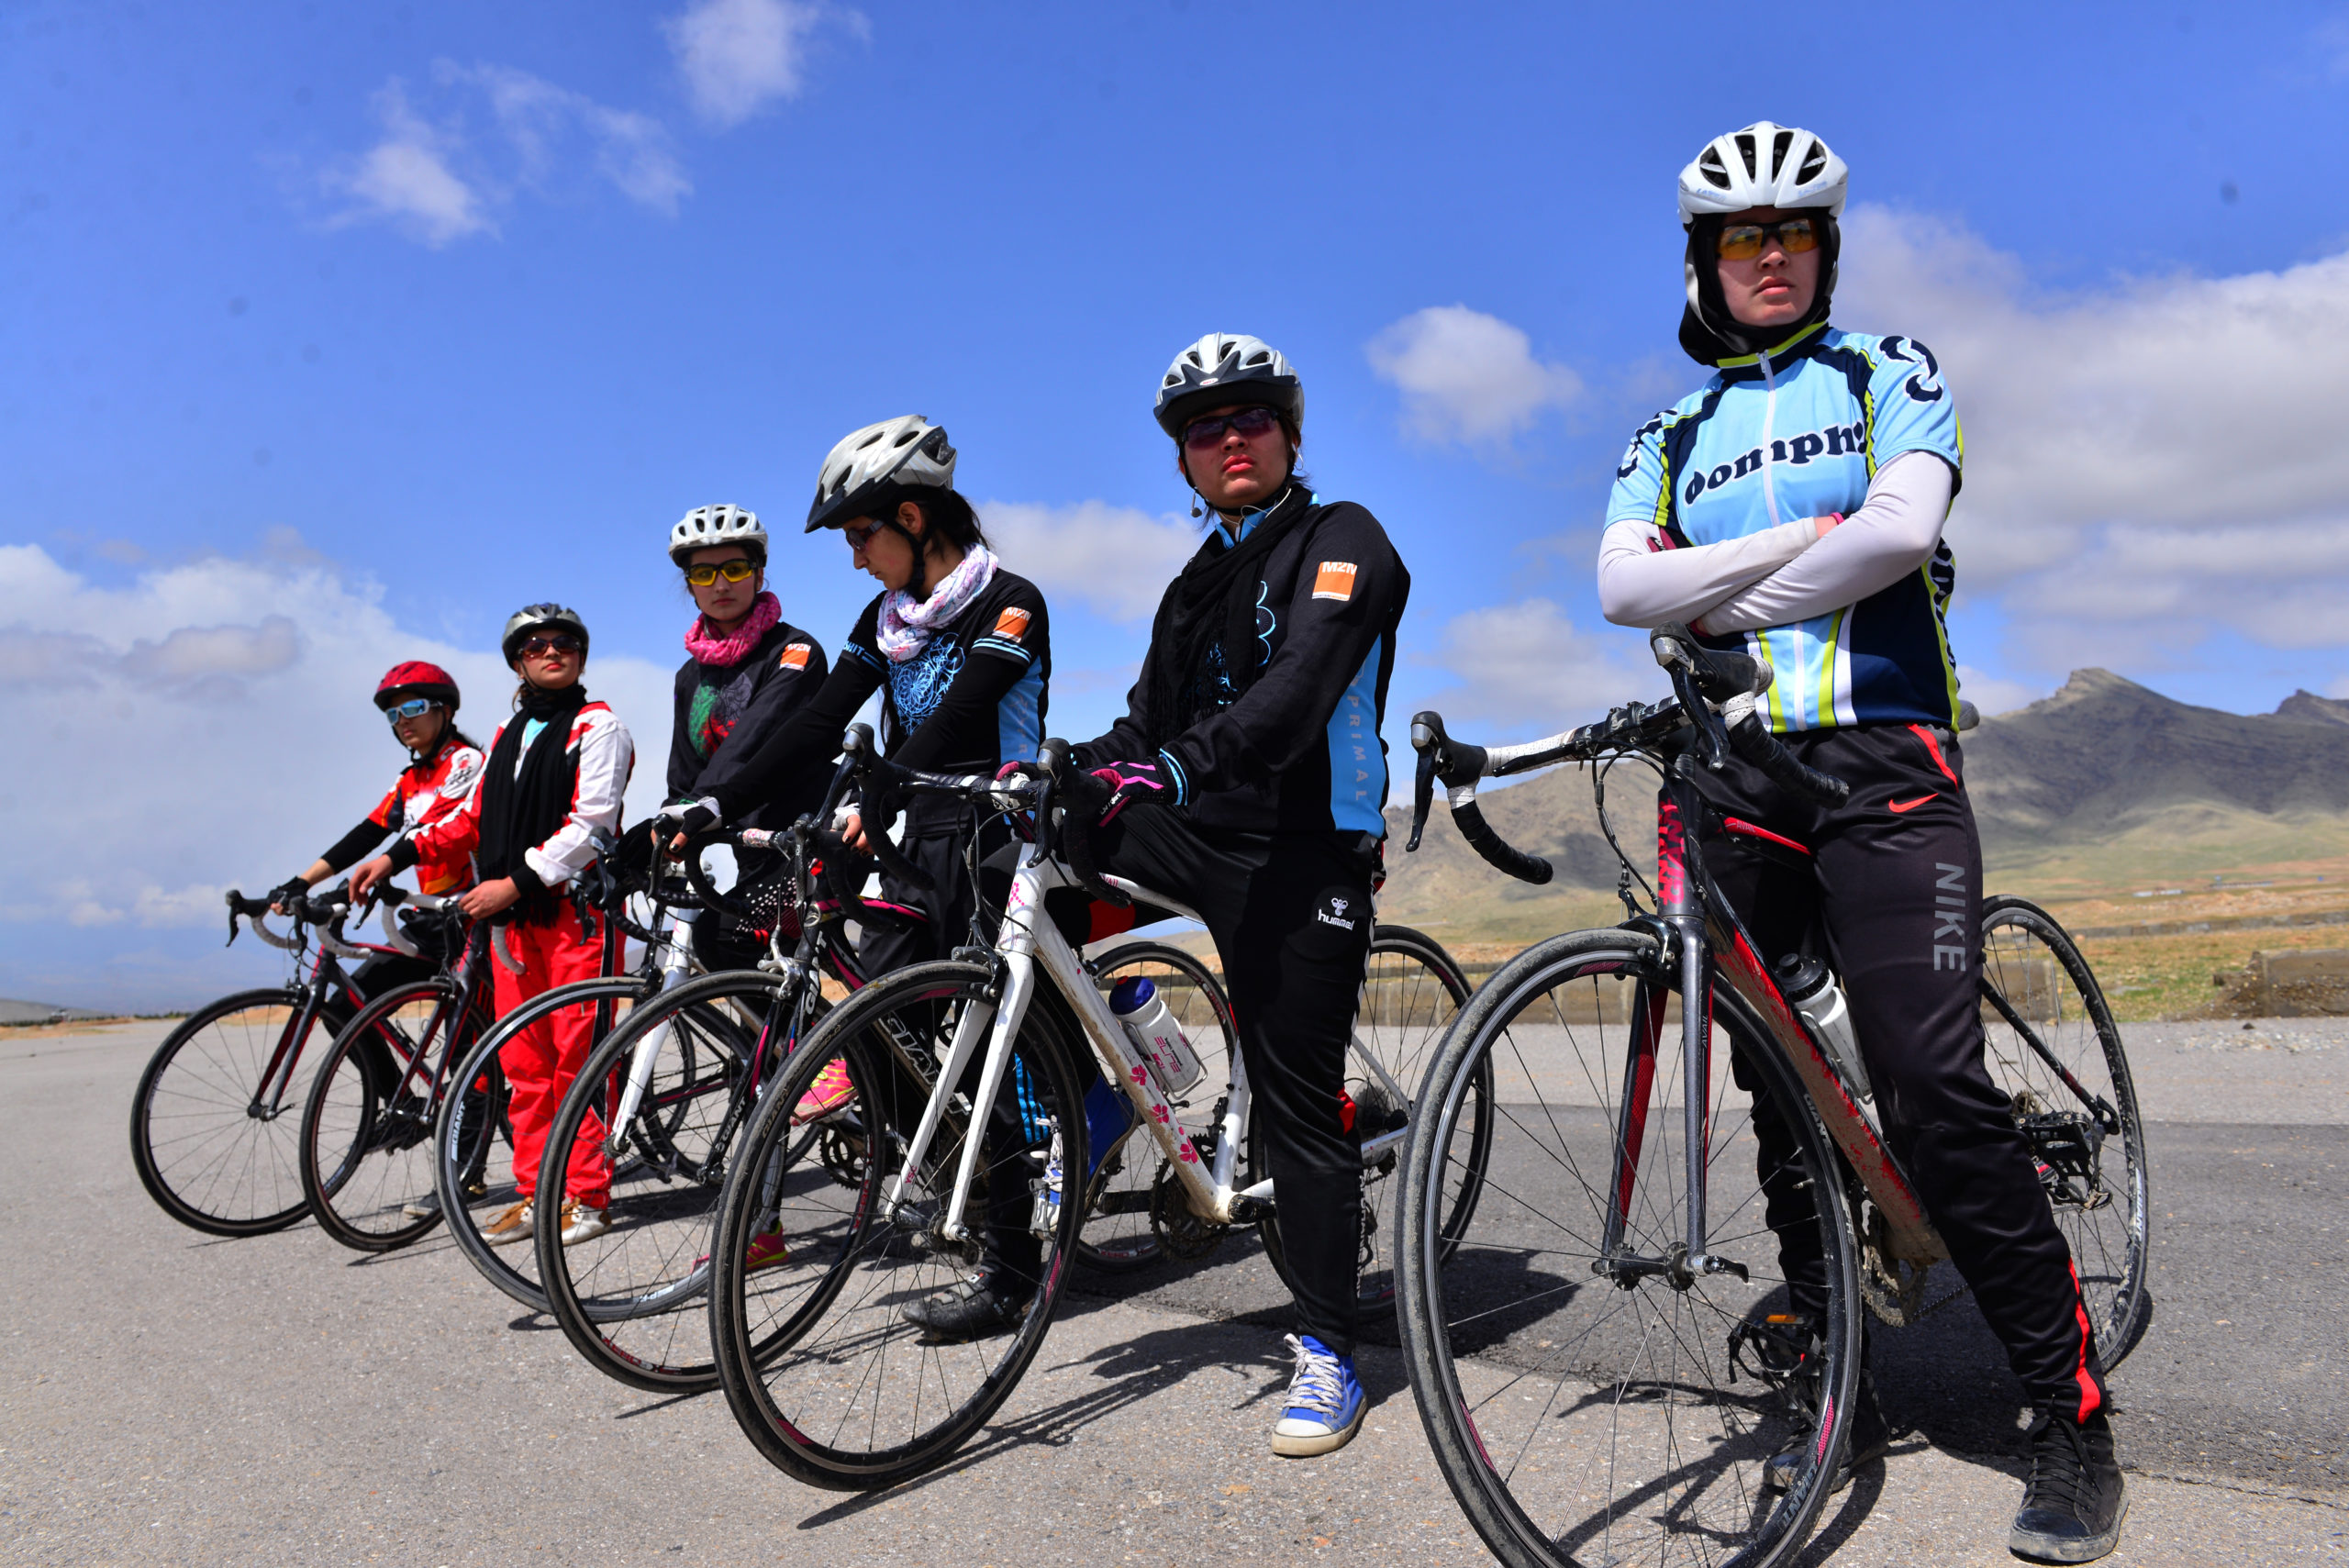 Saleem fotografierte das weibliche Radteam.